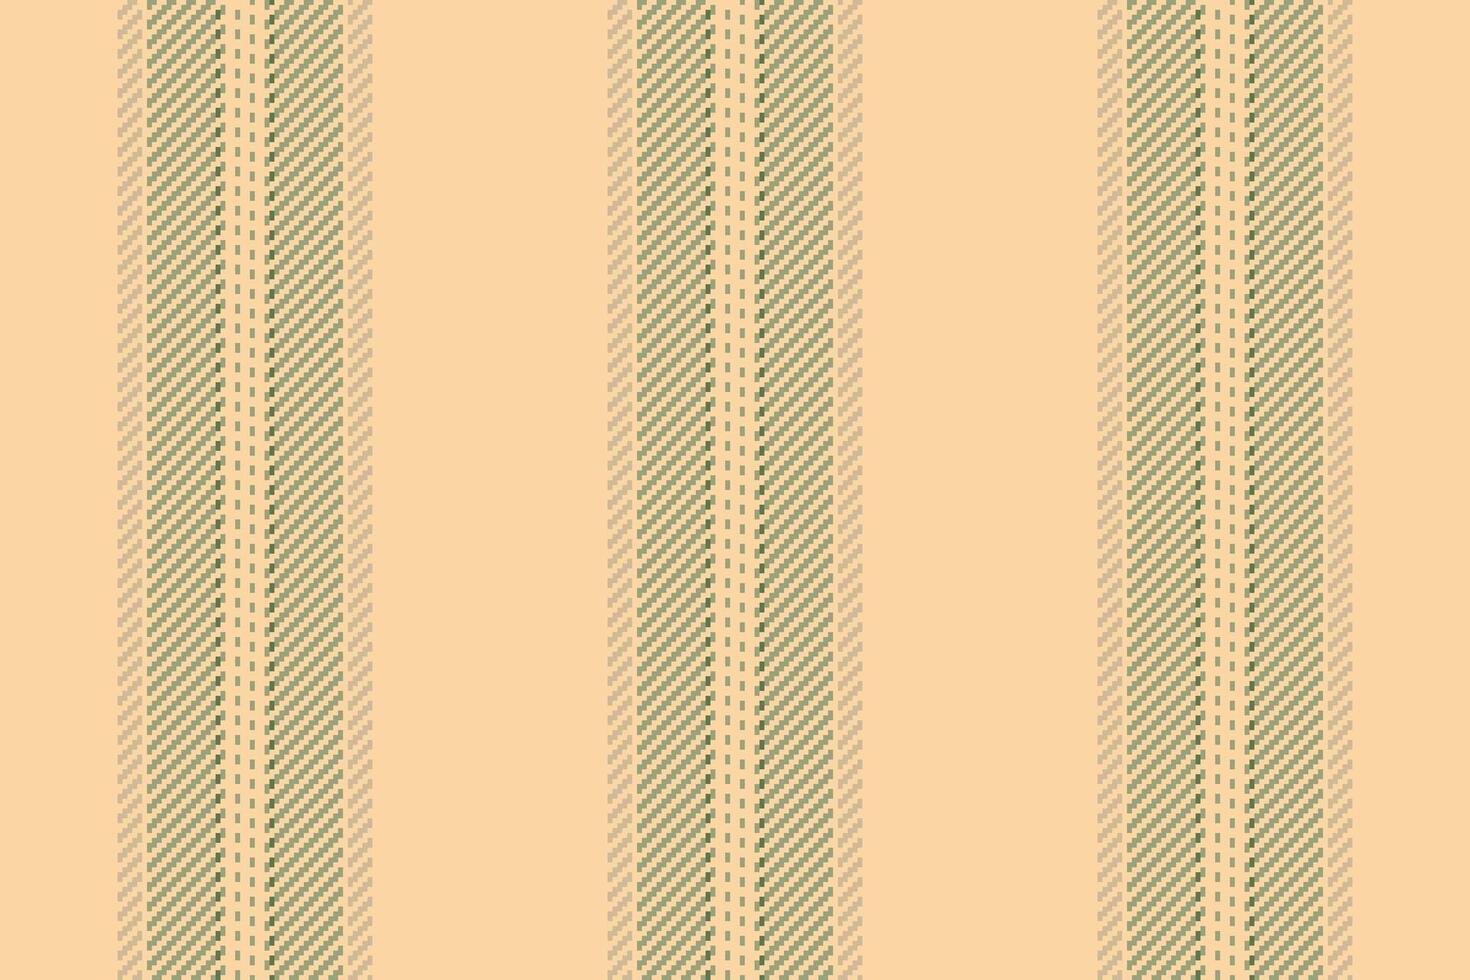 achtergrond kleding stof vector van verticaal naadloos patroon met een structuur lijnen streep textiel.